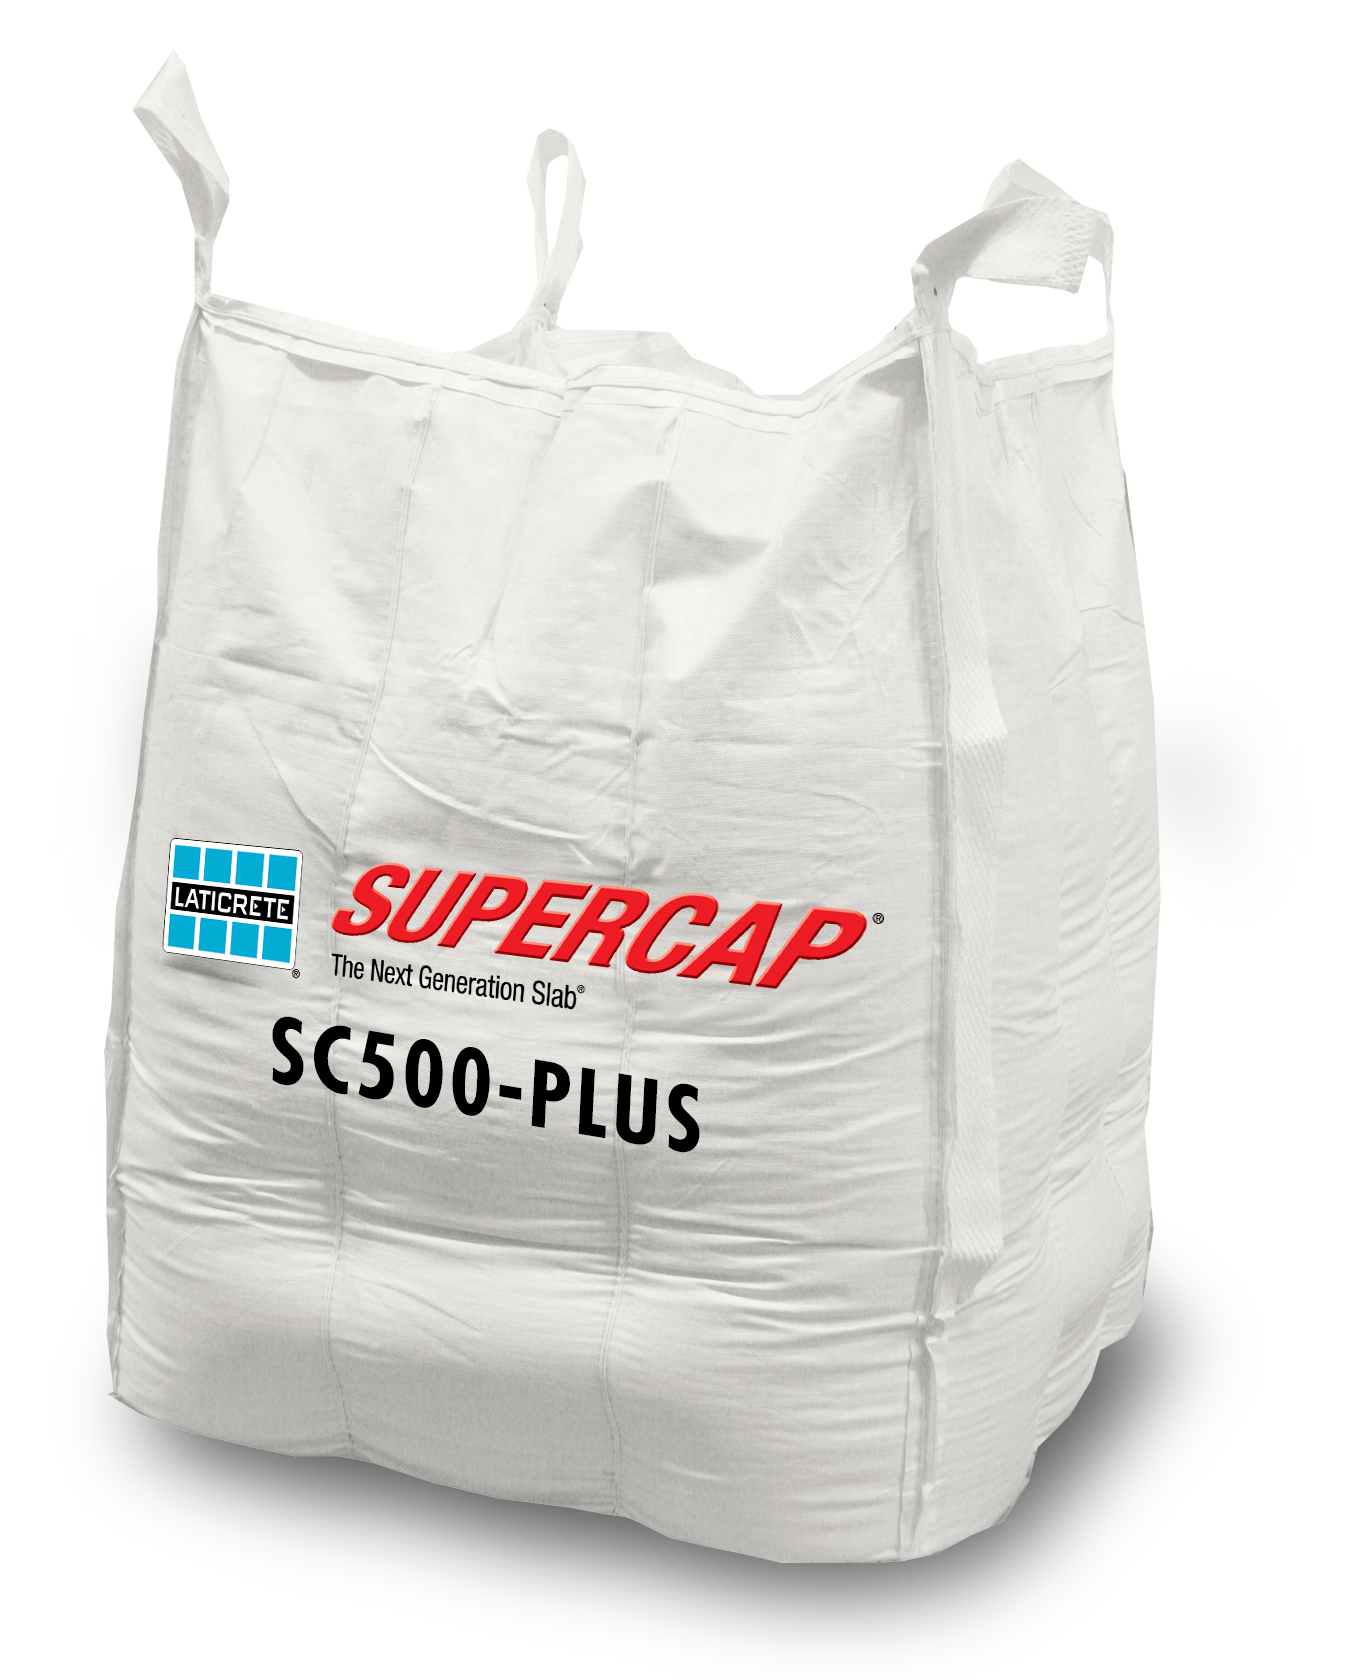 LATICRETE SUPERCAP SC 500 - PLUS